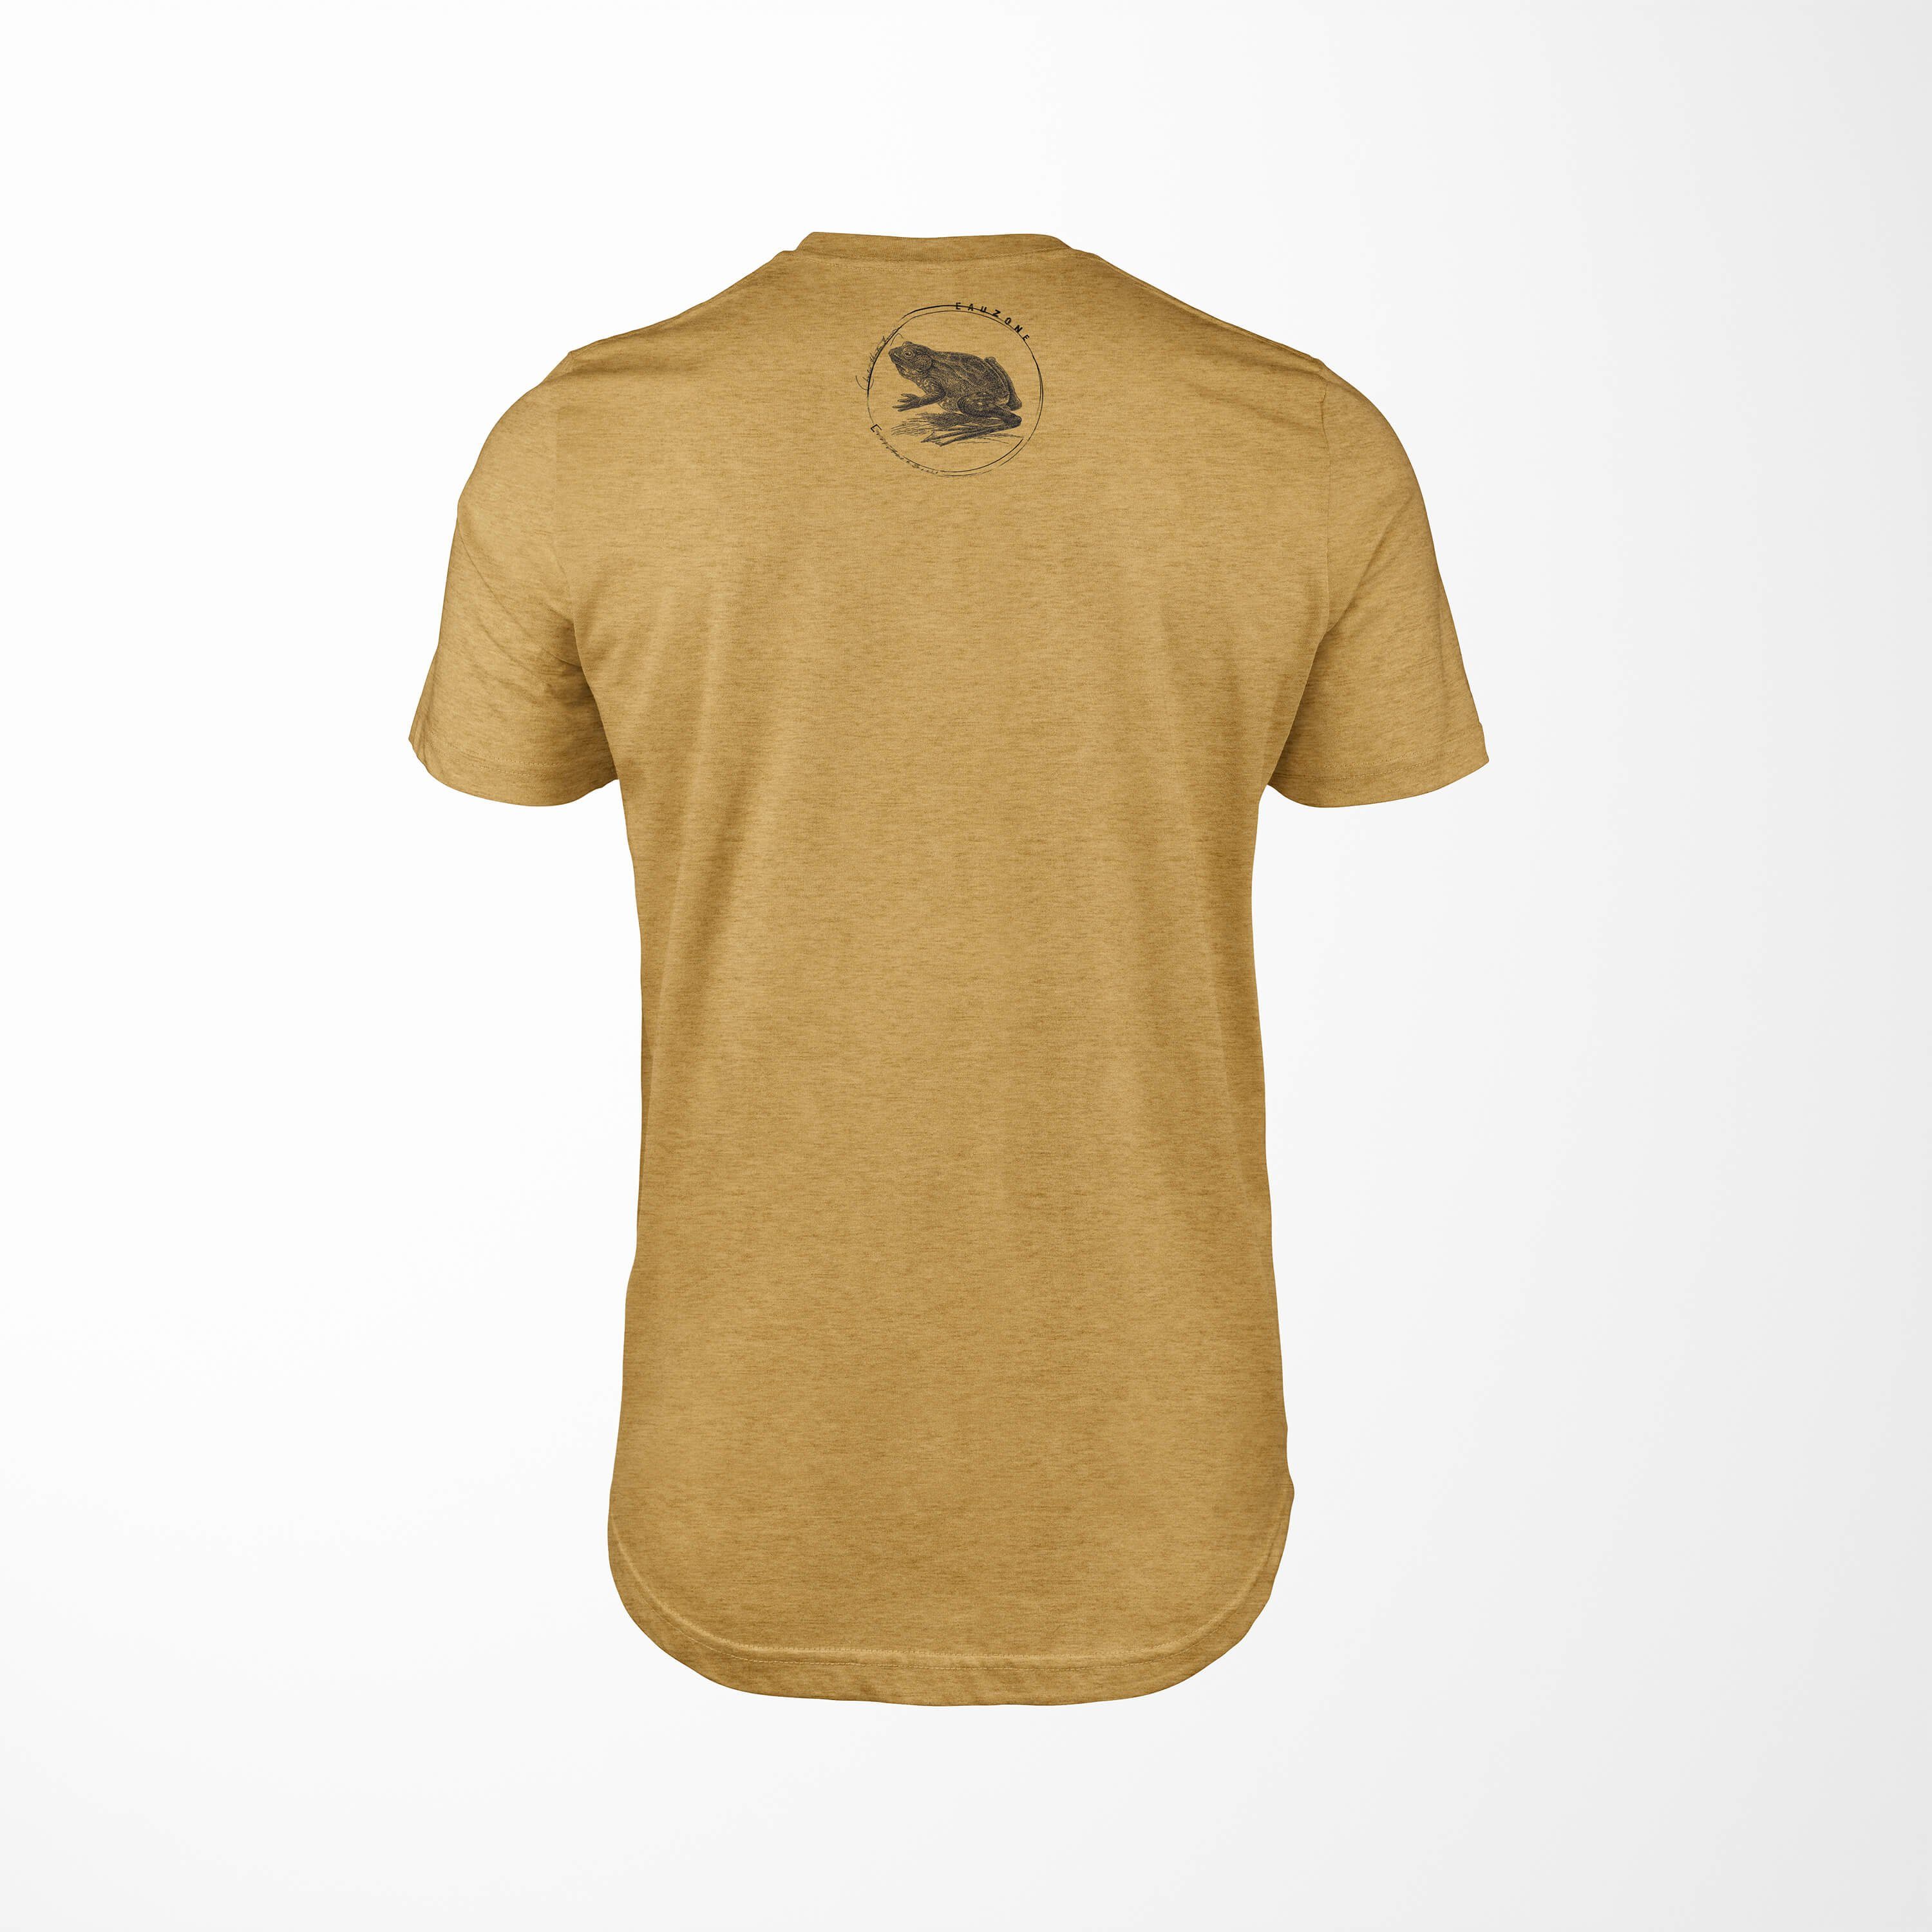 Herren Sinus Evolution Gold Ochsenfrosch T-Shirt T-Shirt Art Antique